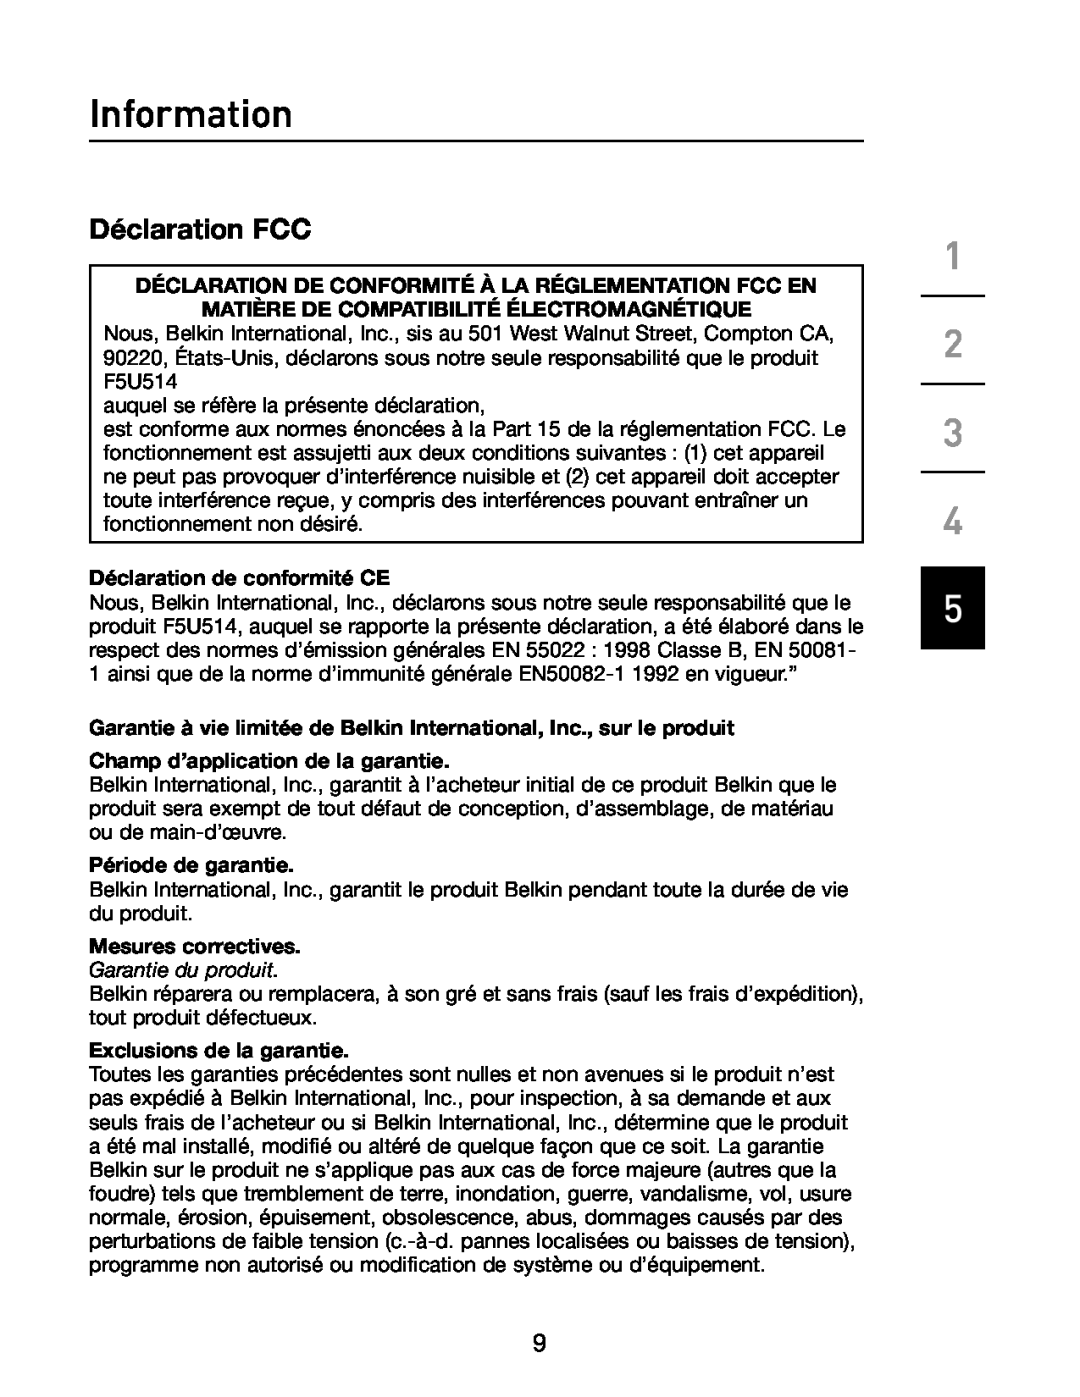 Belkin F5U514 Déclaration FCC, Information, Déclaration De Conformité À La Réglementation Fcc En, Période de garantie 